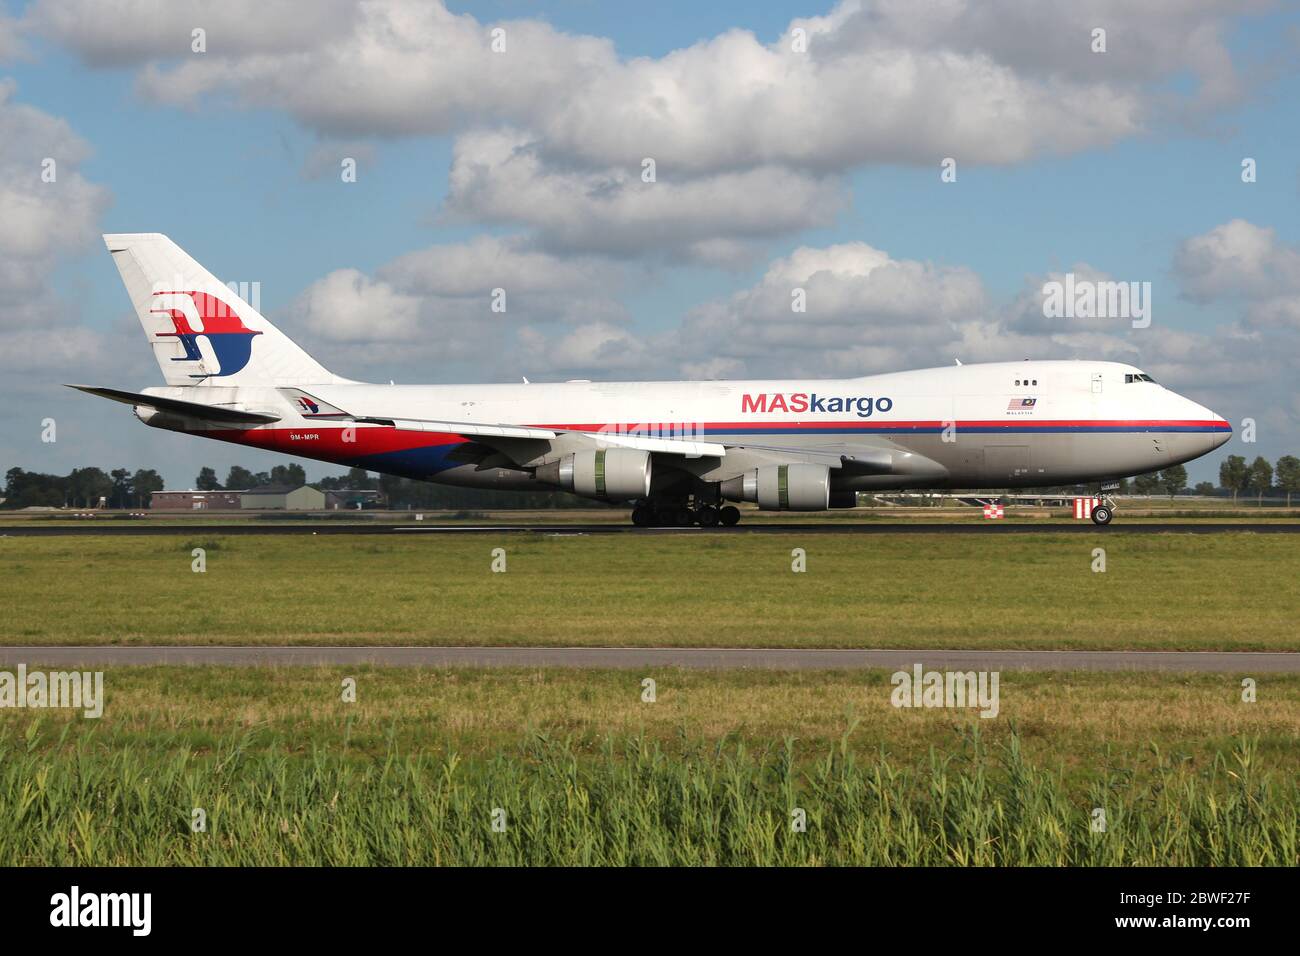 Le Boeing 747-400F MASKargo de Malaisie avec enregistrement 9M-MPR vient d'atterrir sur la piste 18R (Polderbaan) de l'aéroport d'Amsterdam Schiphol. Banque D'Images